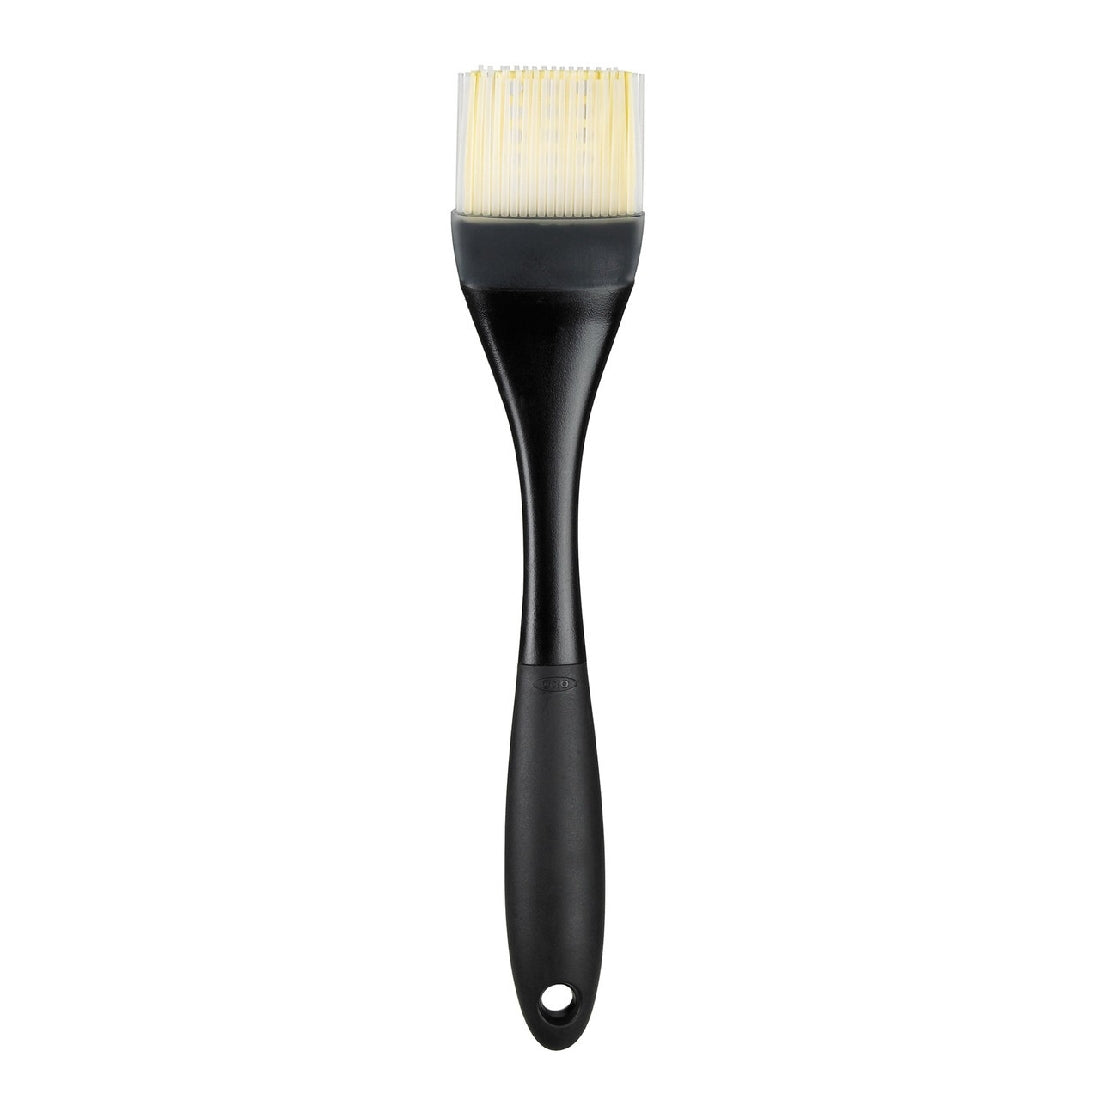 Oxo Good Grips Silicone Basting Brush